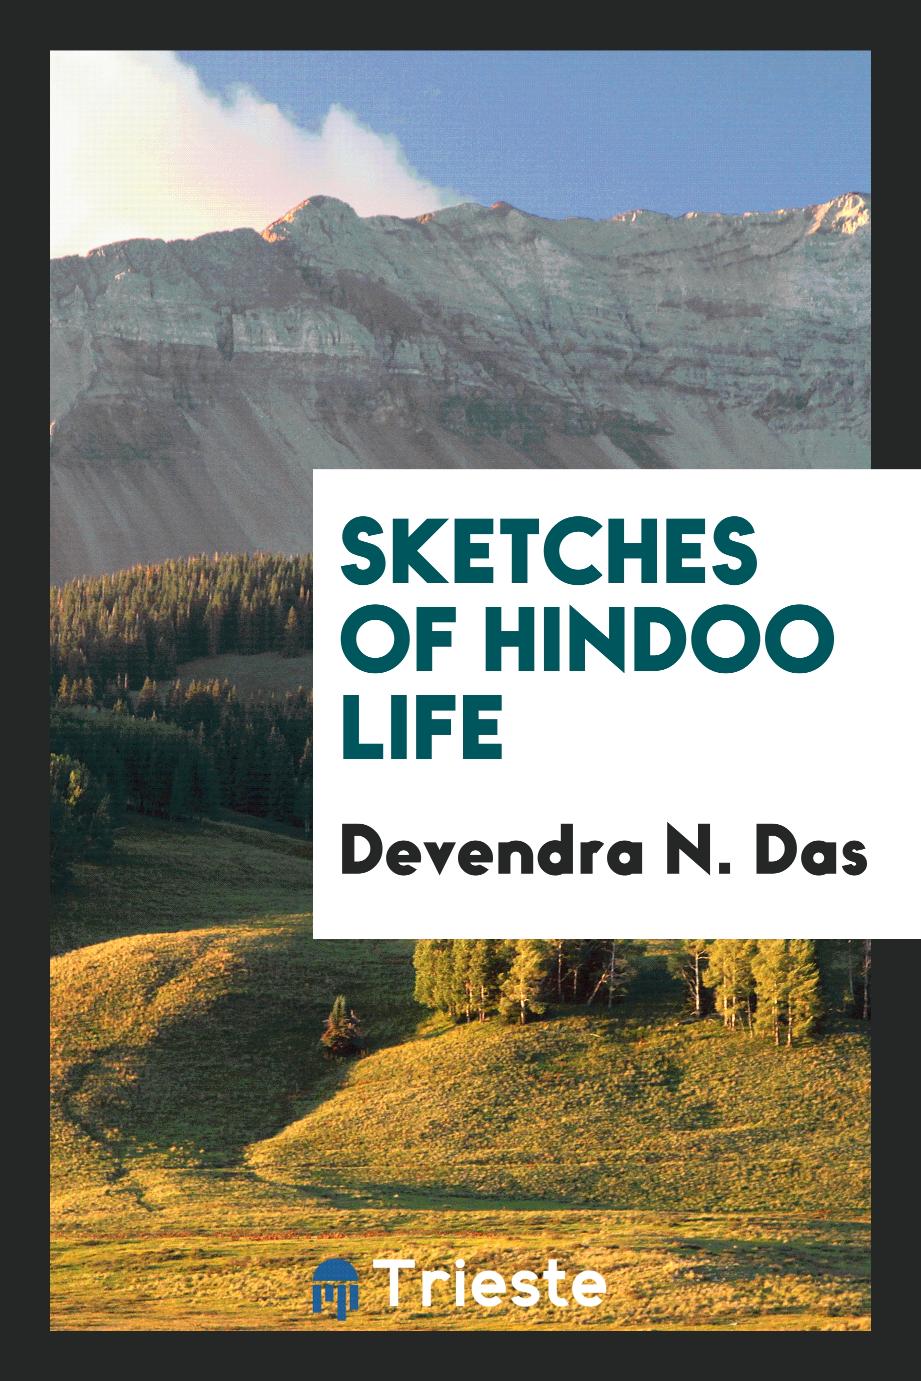 Sketches of Hindoo life